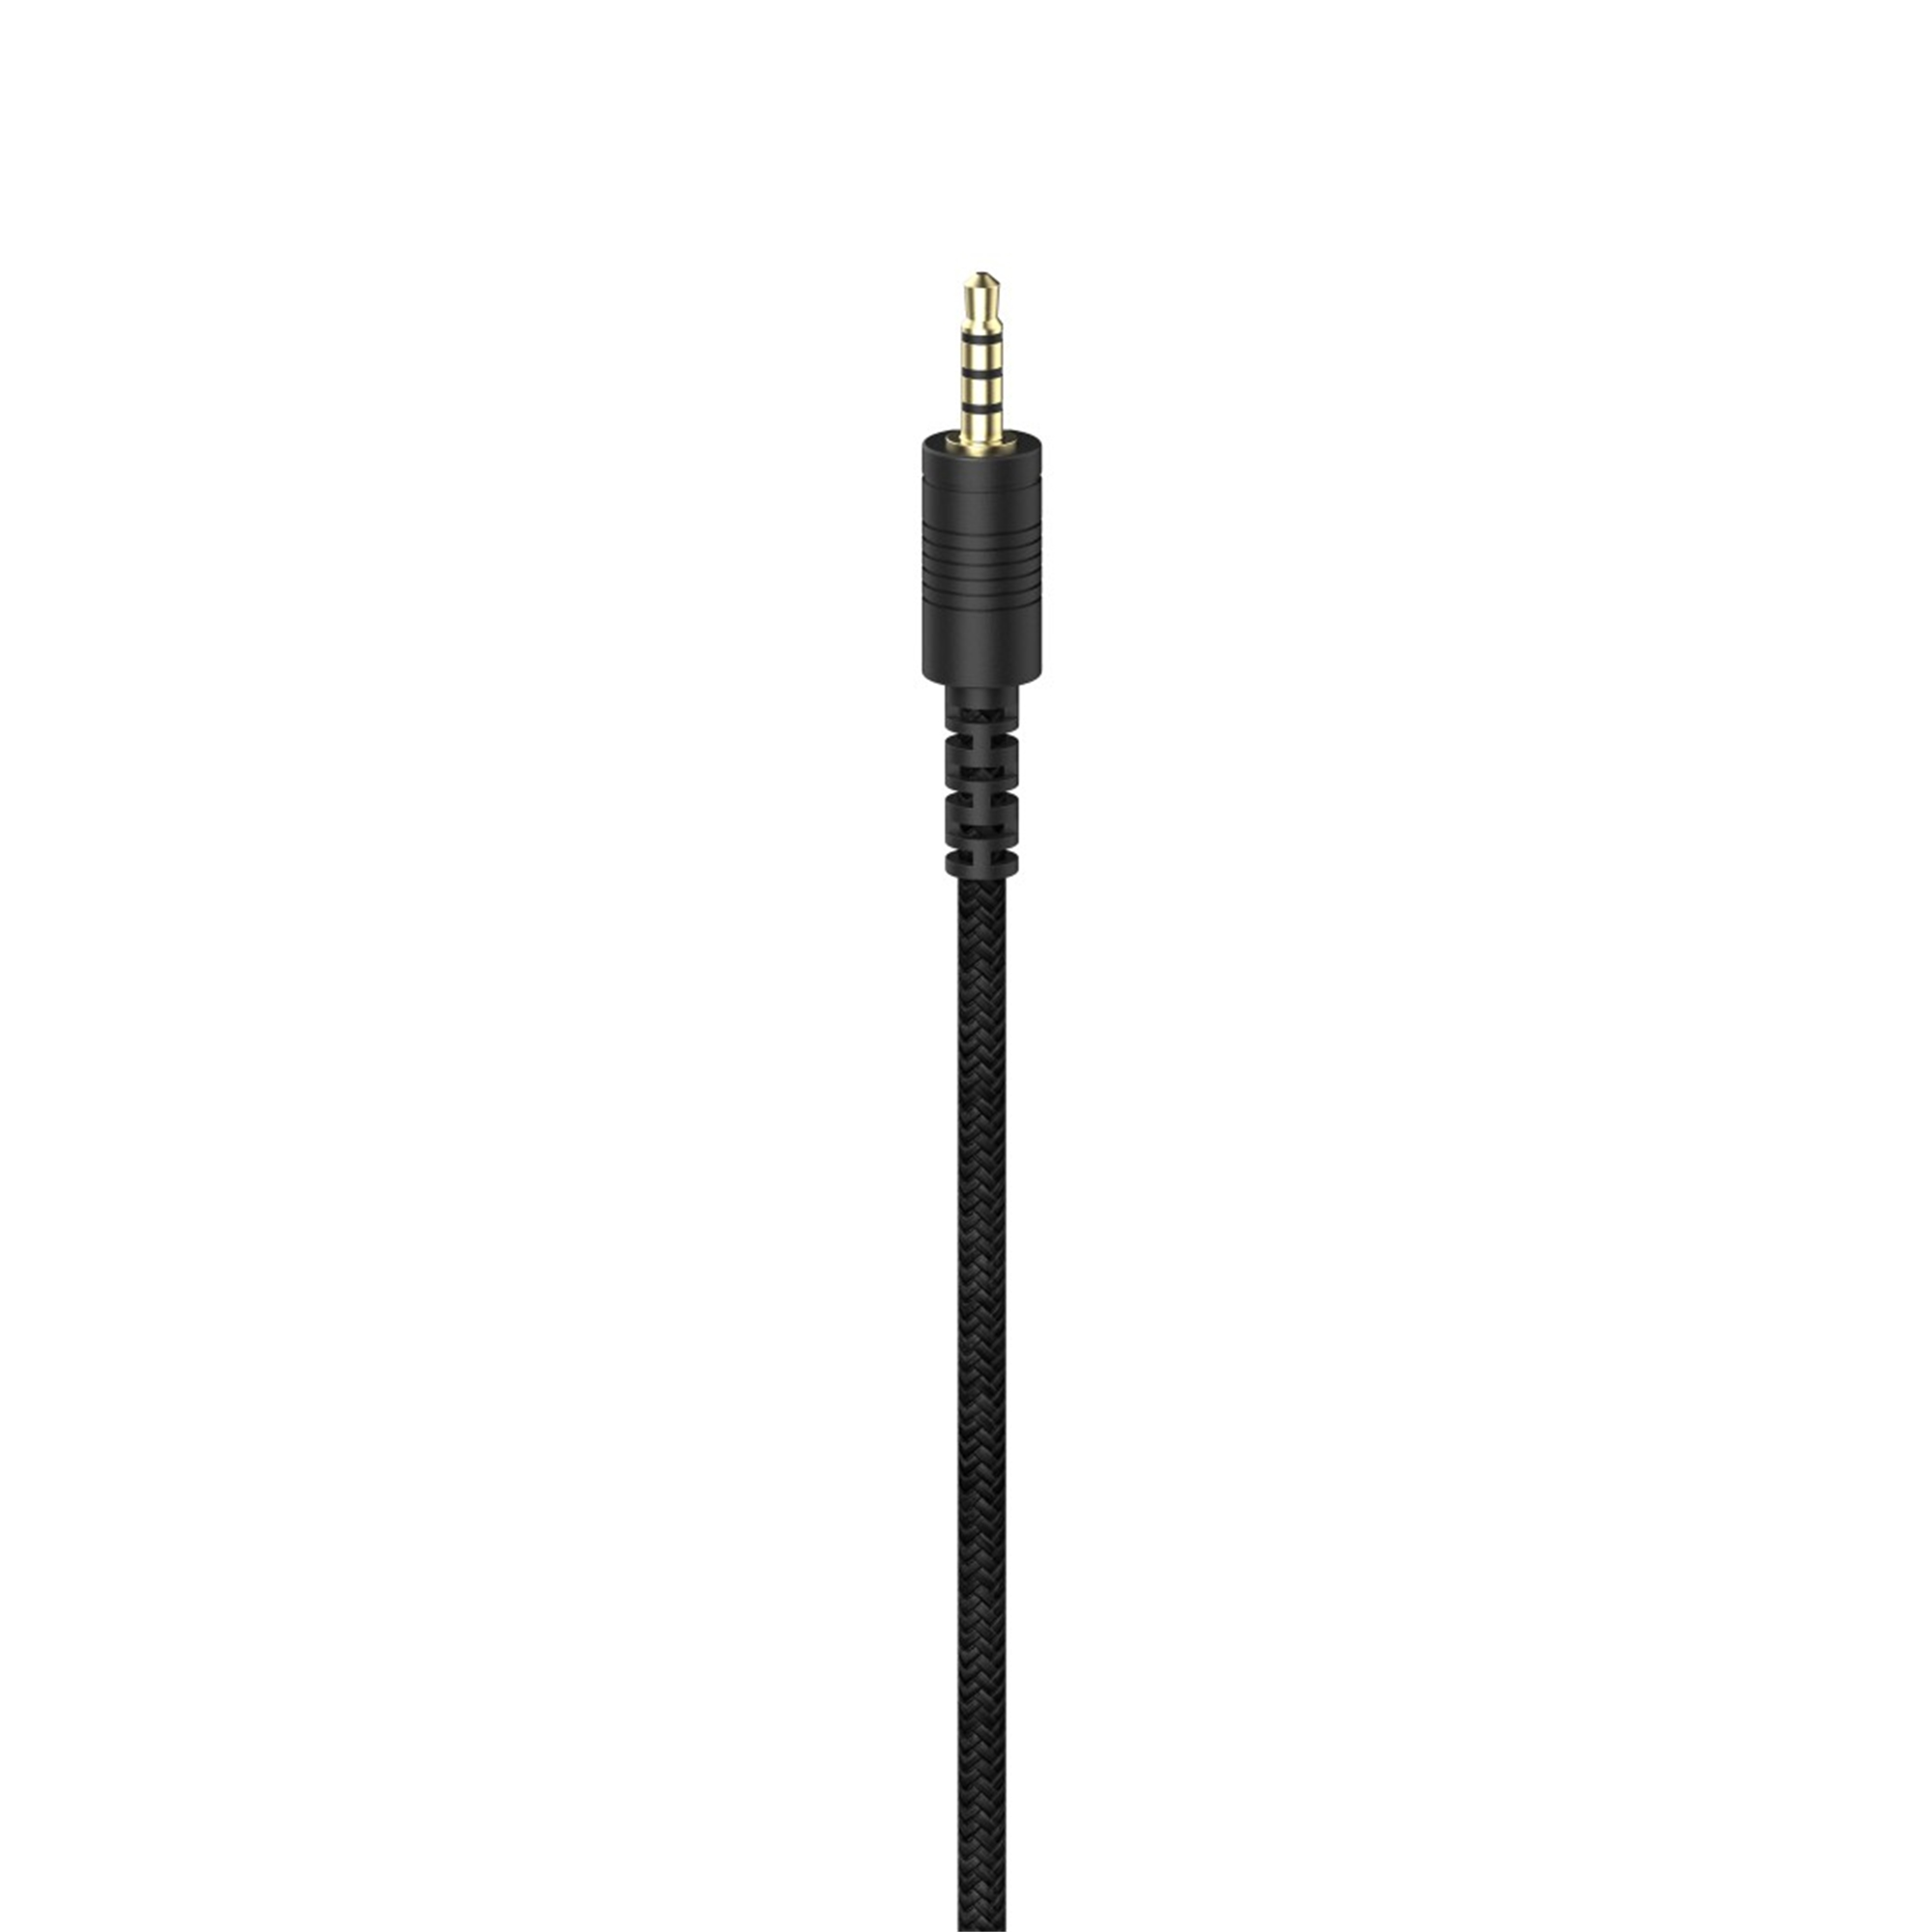 URAGE SoundZ 100 V2, Over-ear Gaming-Headset Weiß